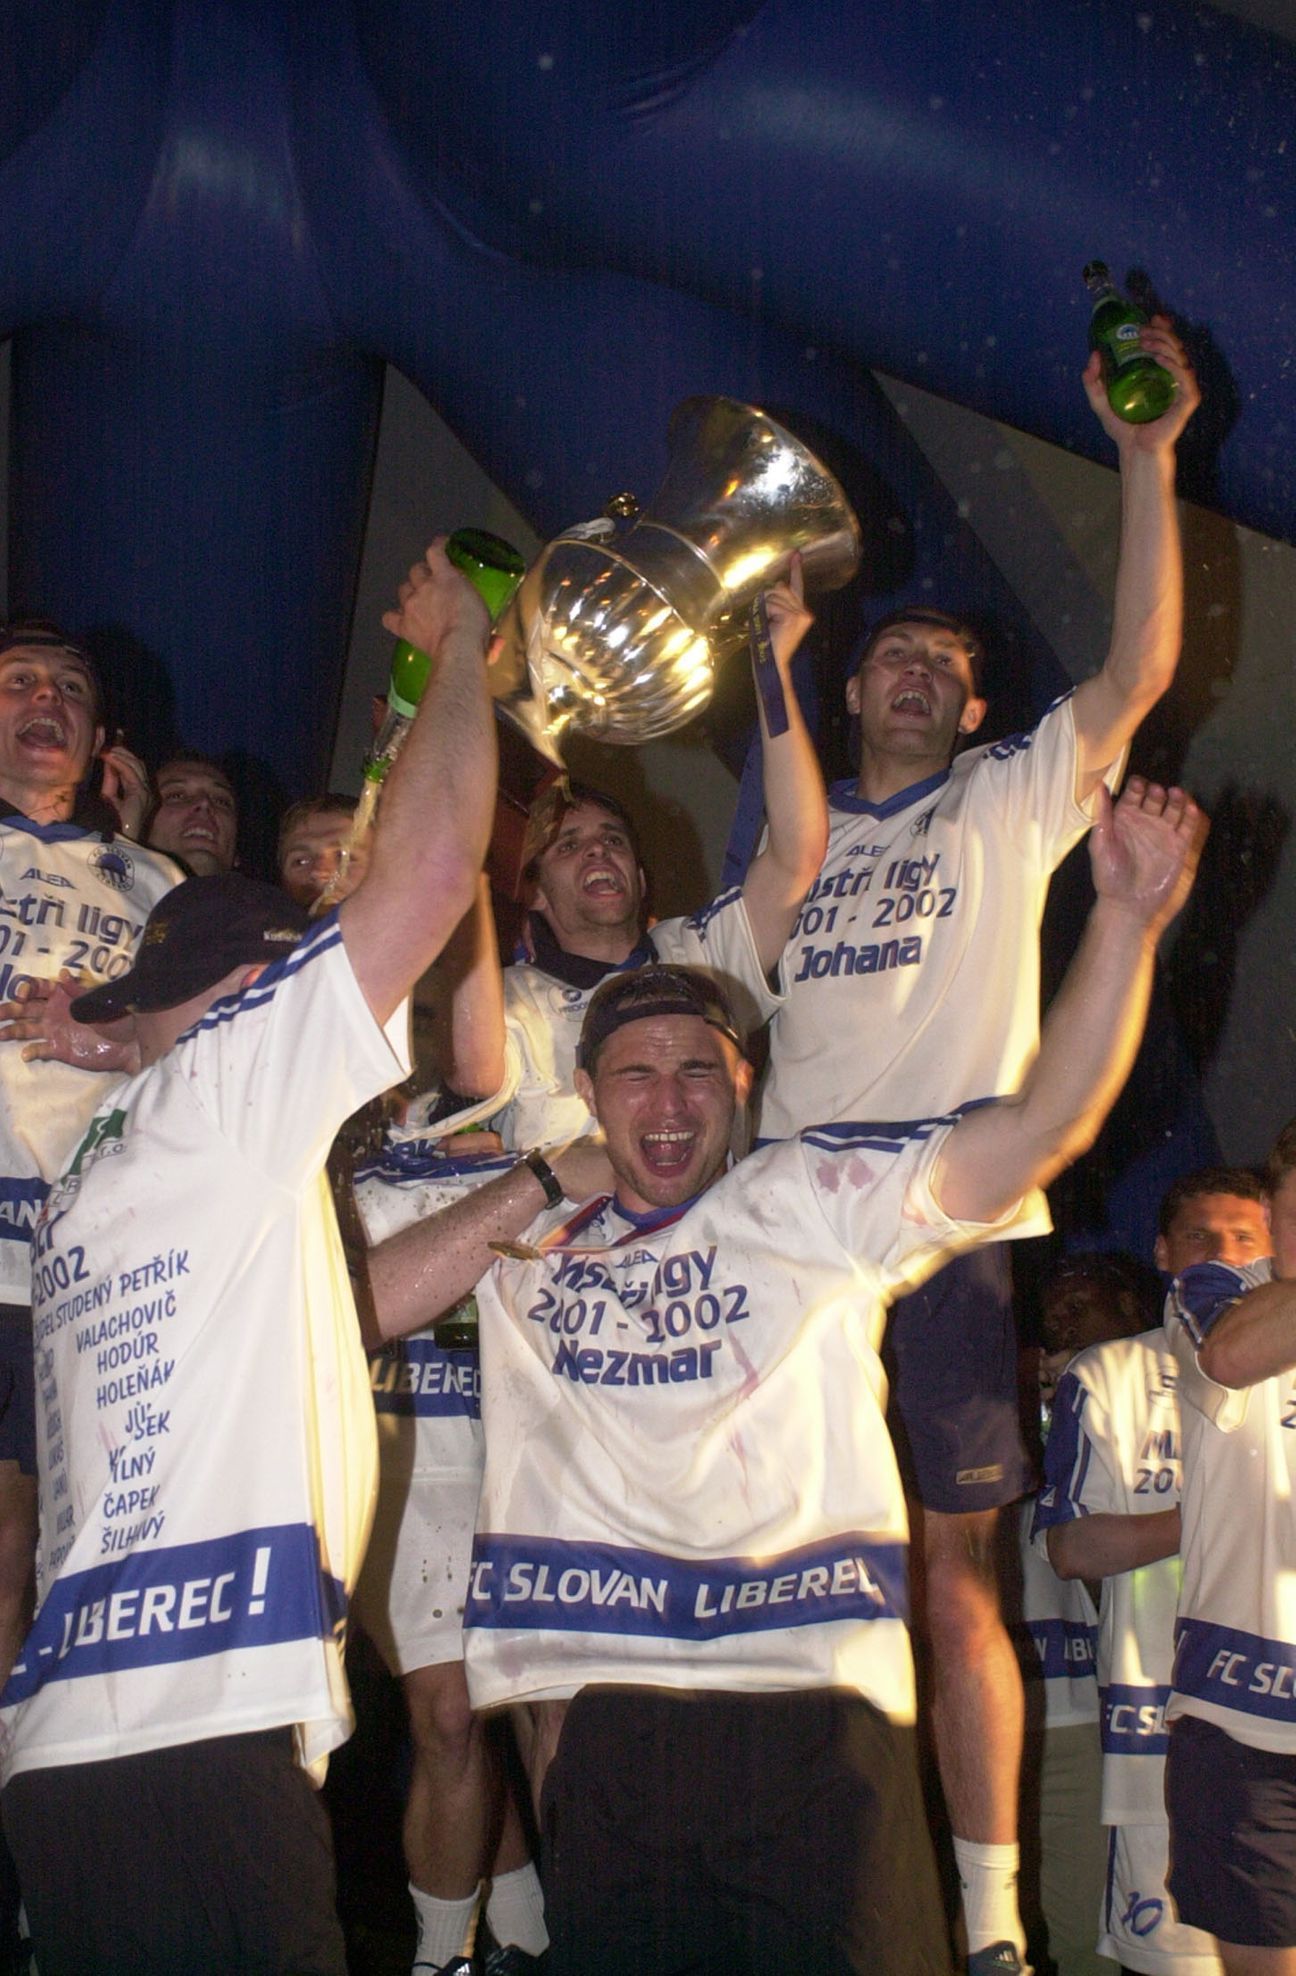 Liberecké oslavy titulu v roce 2002: Nezmar, Johana, Janů